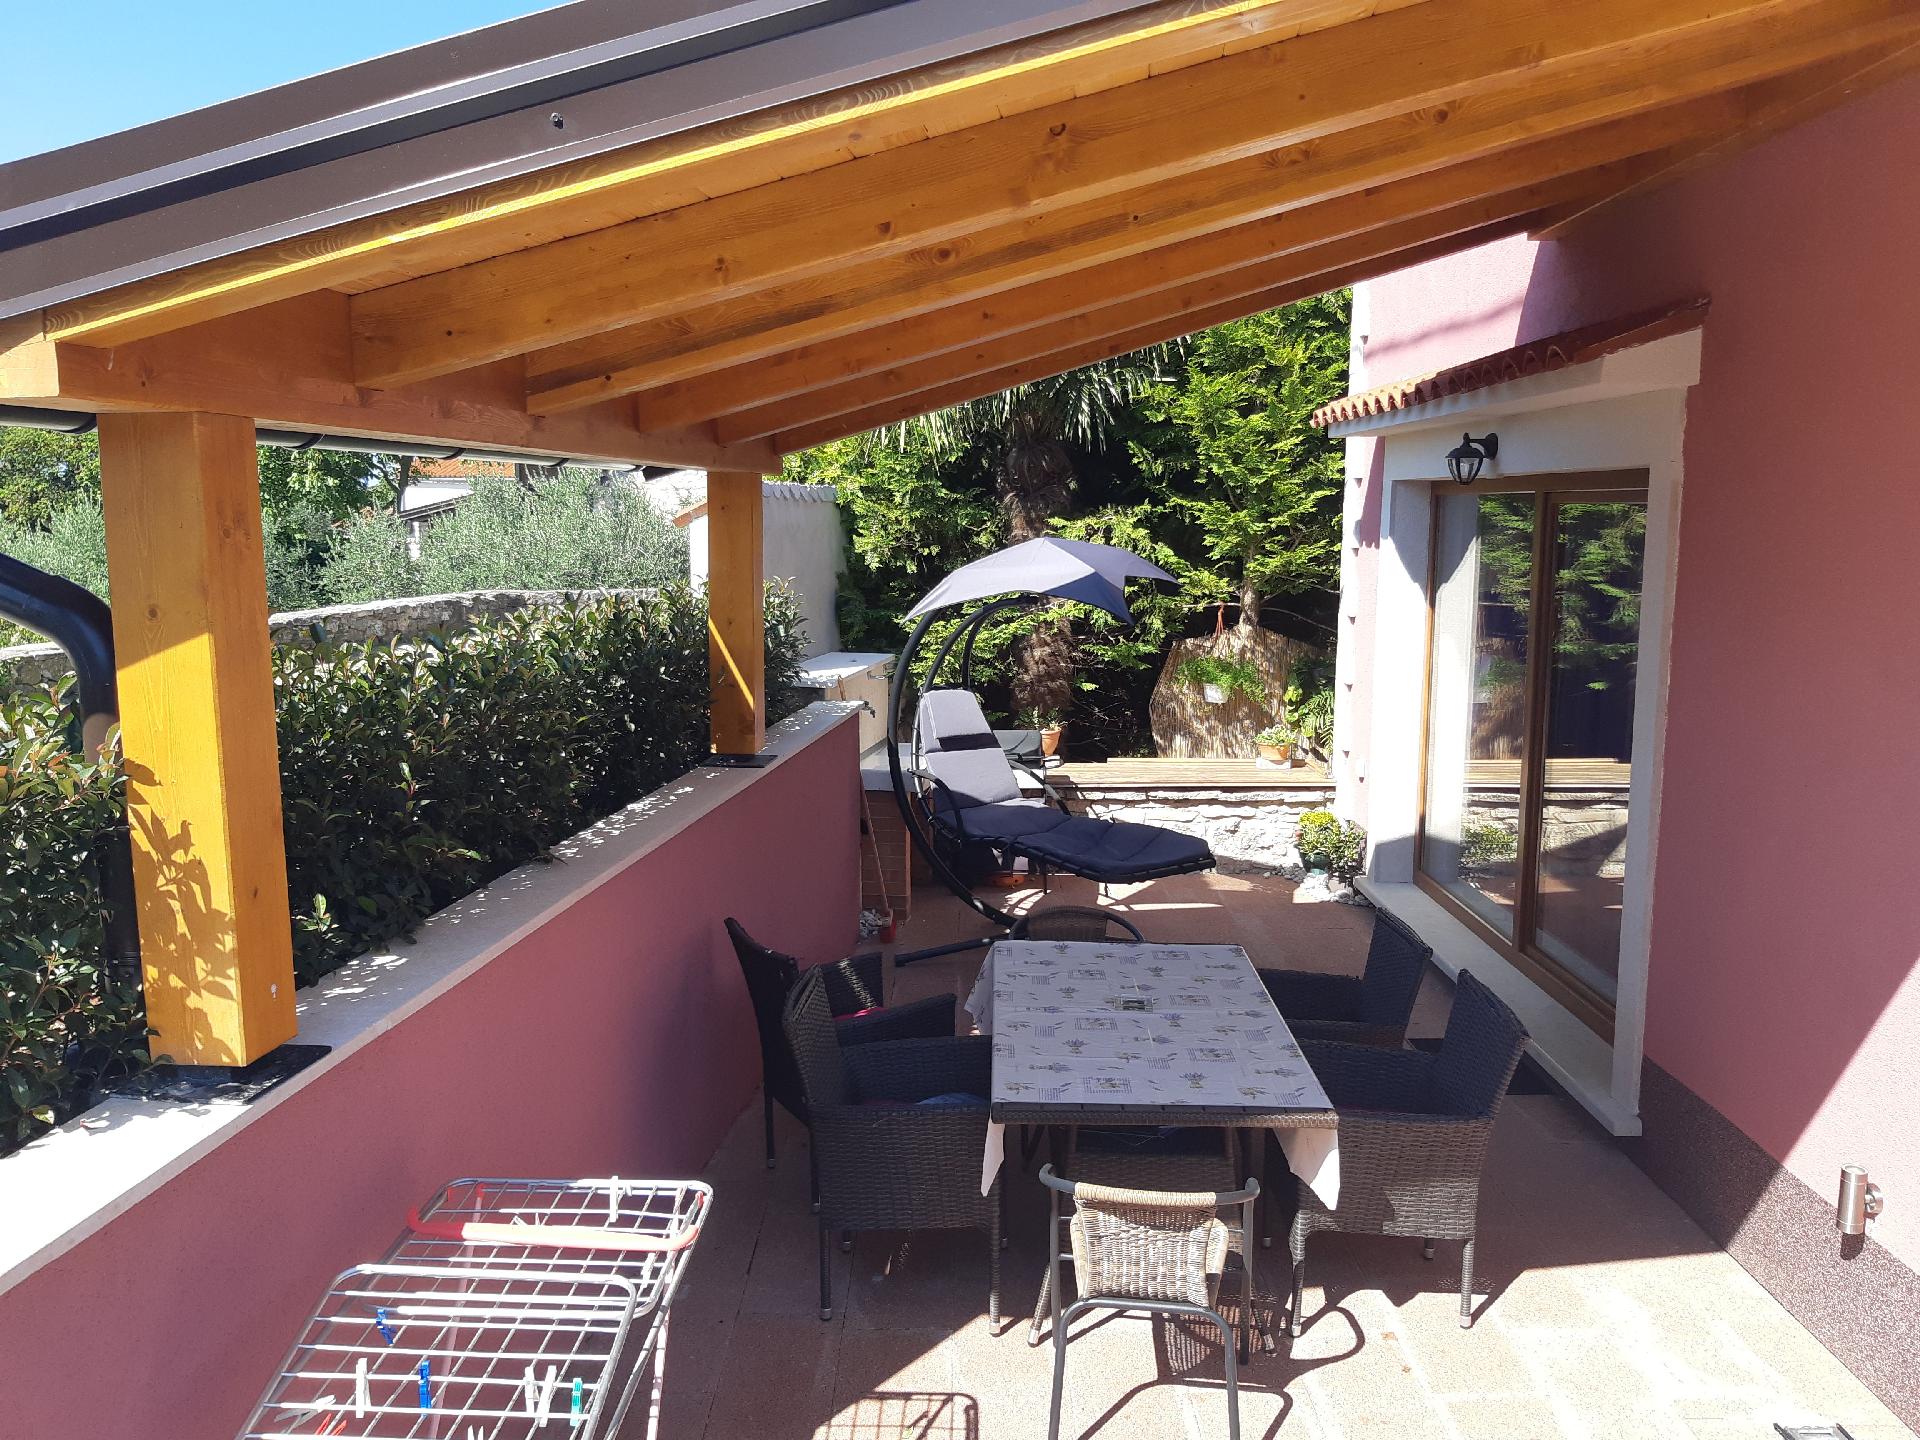 Ferienwohnung mit Terrasse für sechs Personen Ferienhaus in Istrien